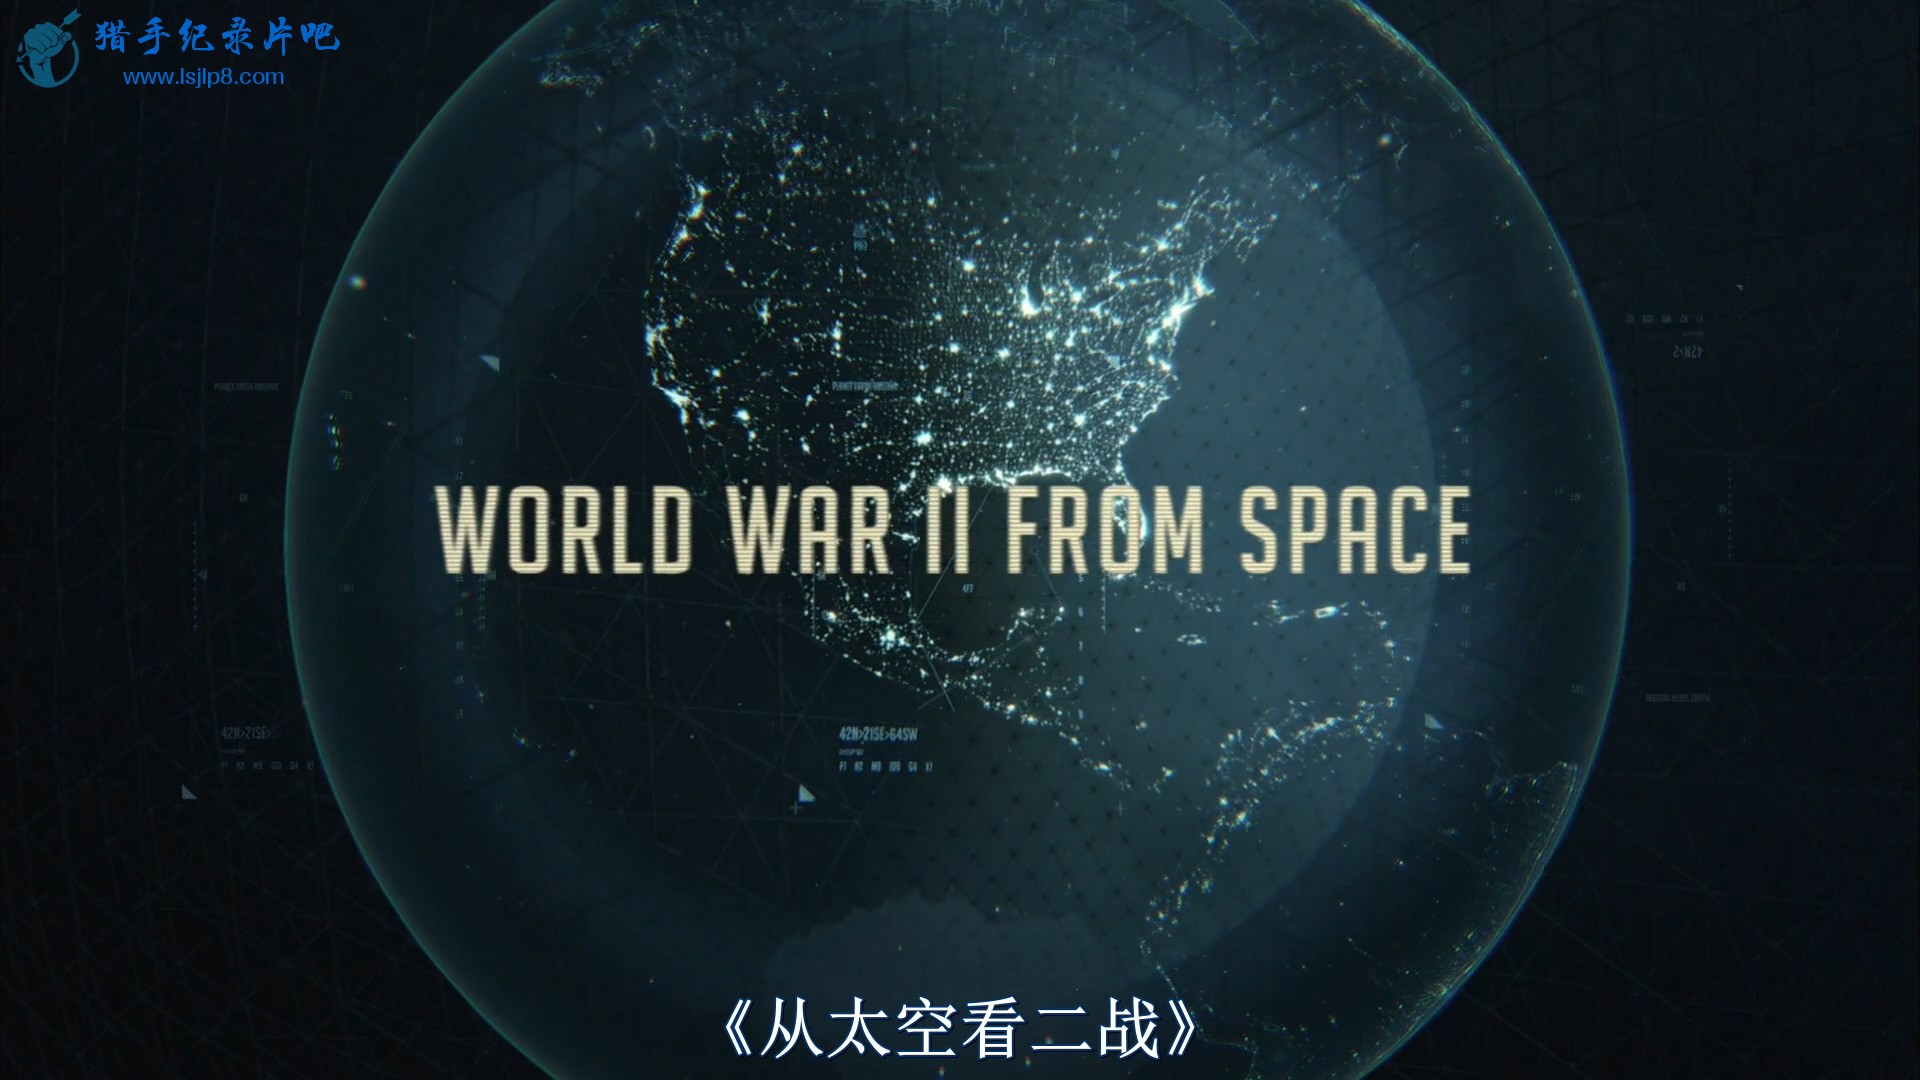 WWII.From.Space.2012.1080p.BluRay.x264-BiQ.mkv_20200315_093849.055.jpg